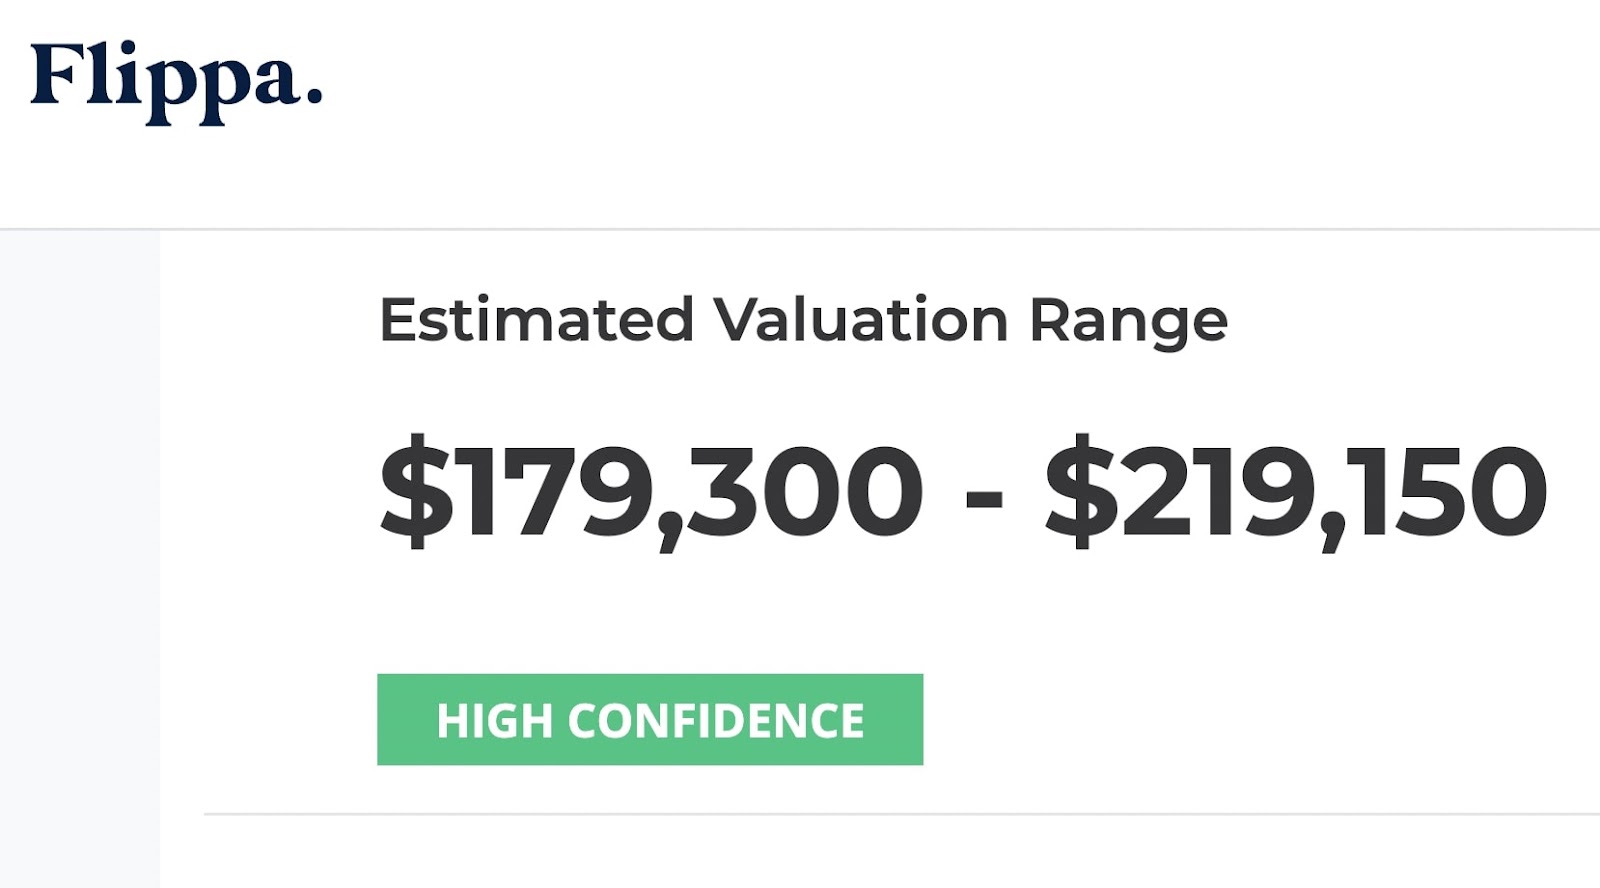 Estimated valuation range on Flippa's homepage